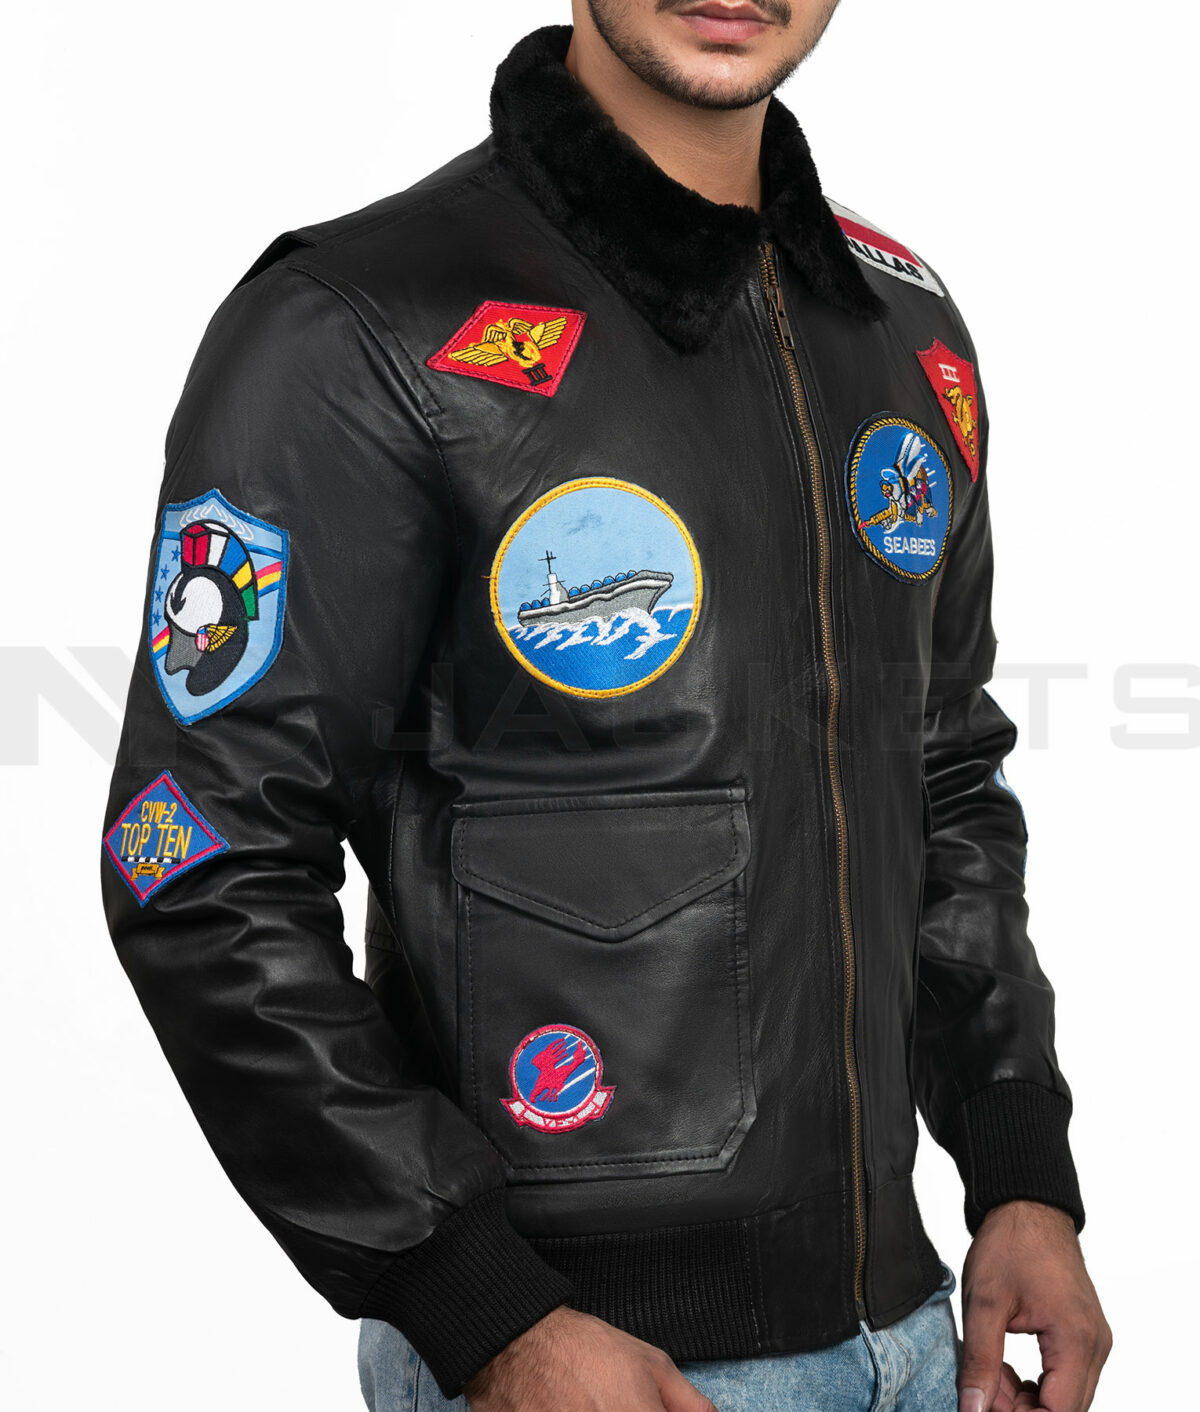 Top Gun Tom Cruise Jacket